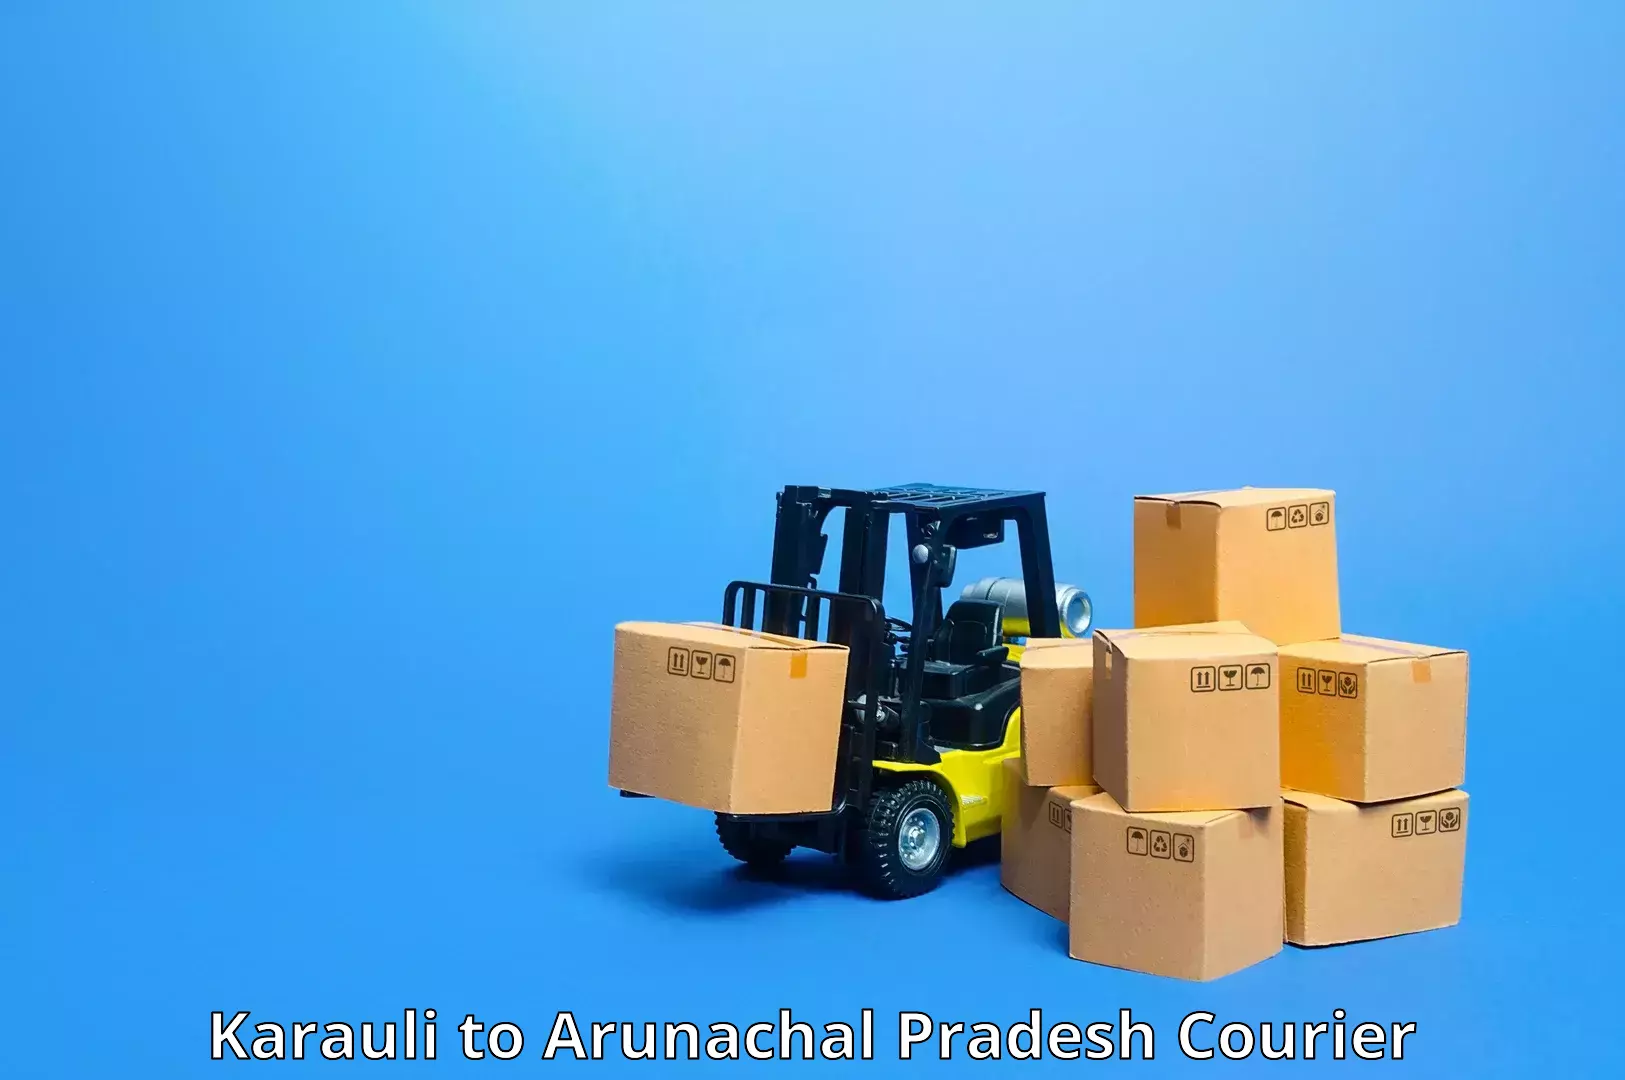 Smart shipping technology Karauli to Lohit